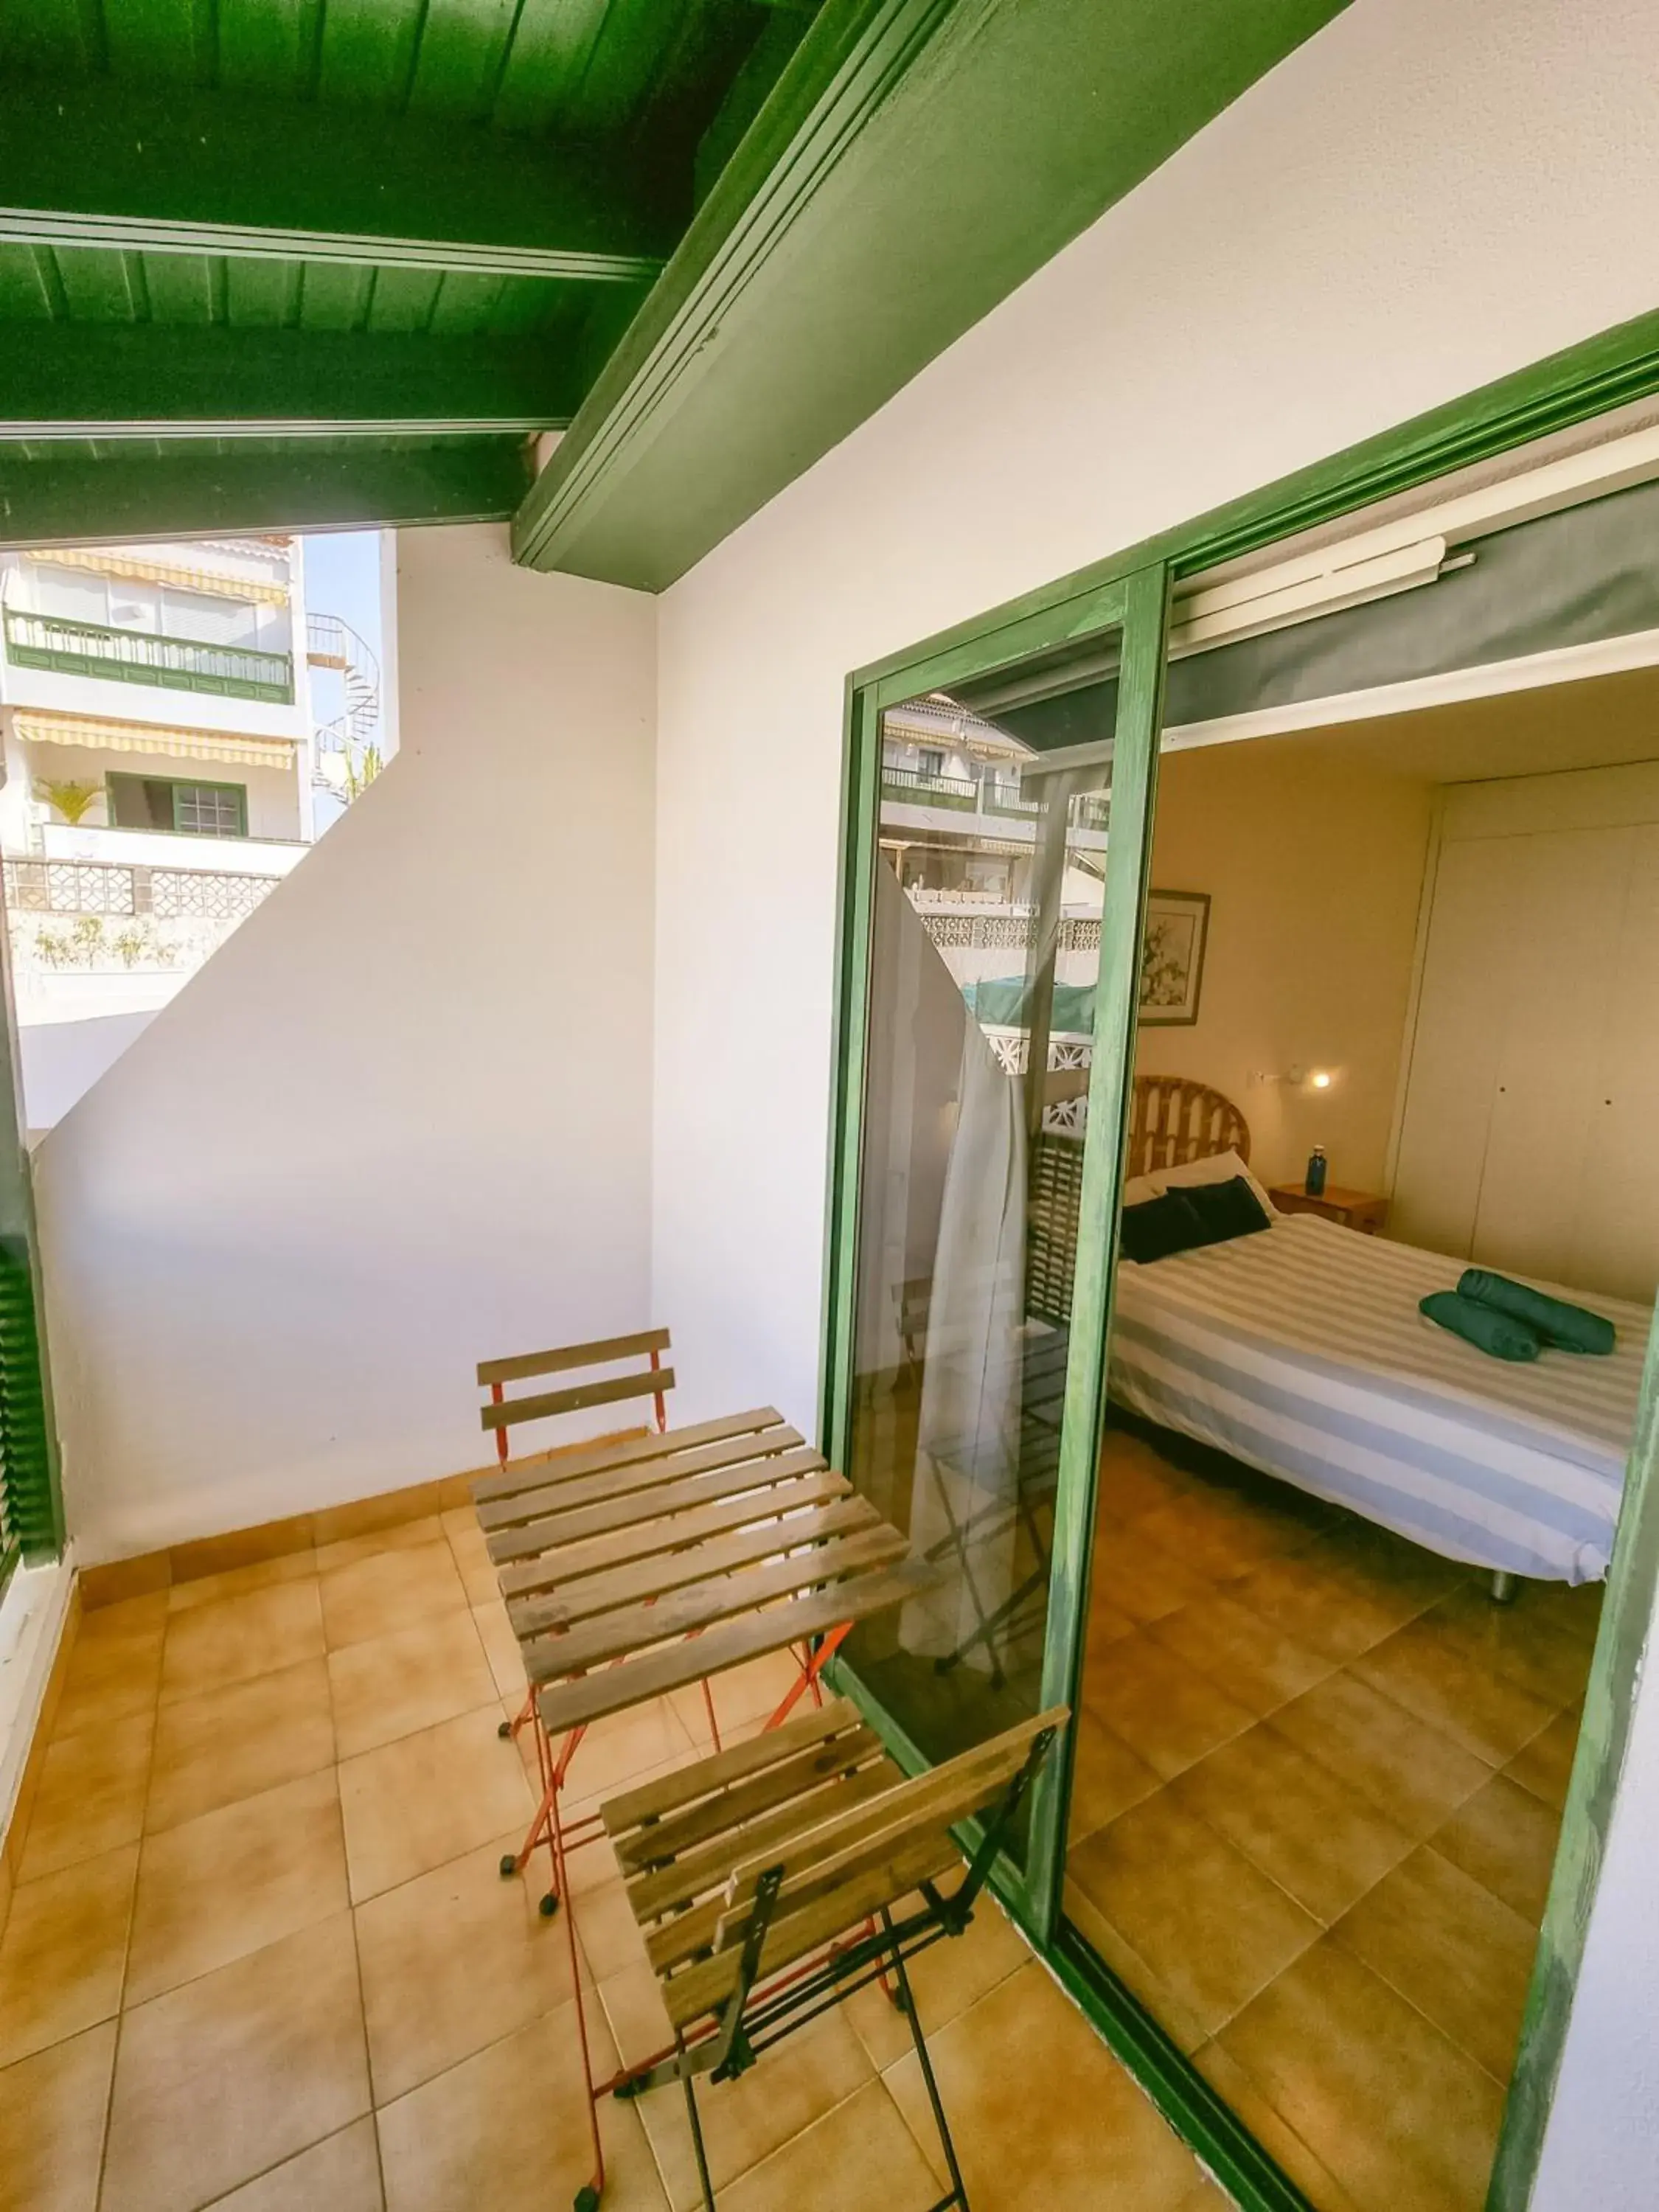 Balcony/Terrace, Bunk Bed in Arena Nest Hostel